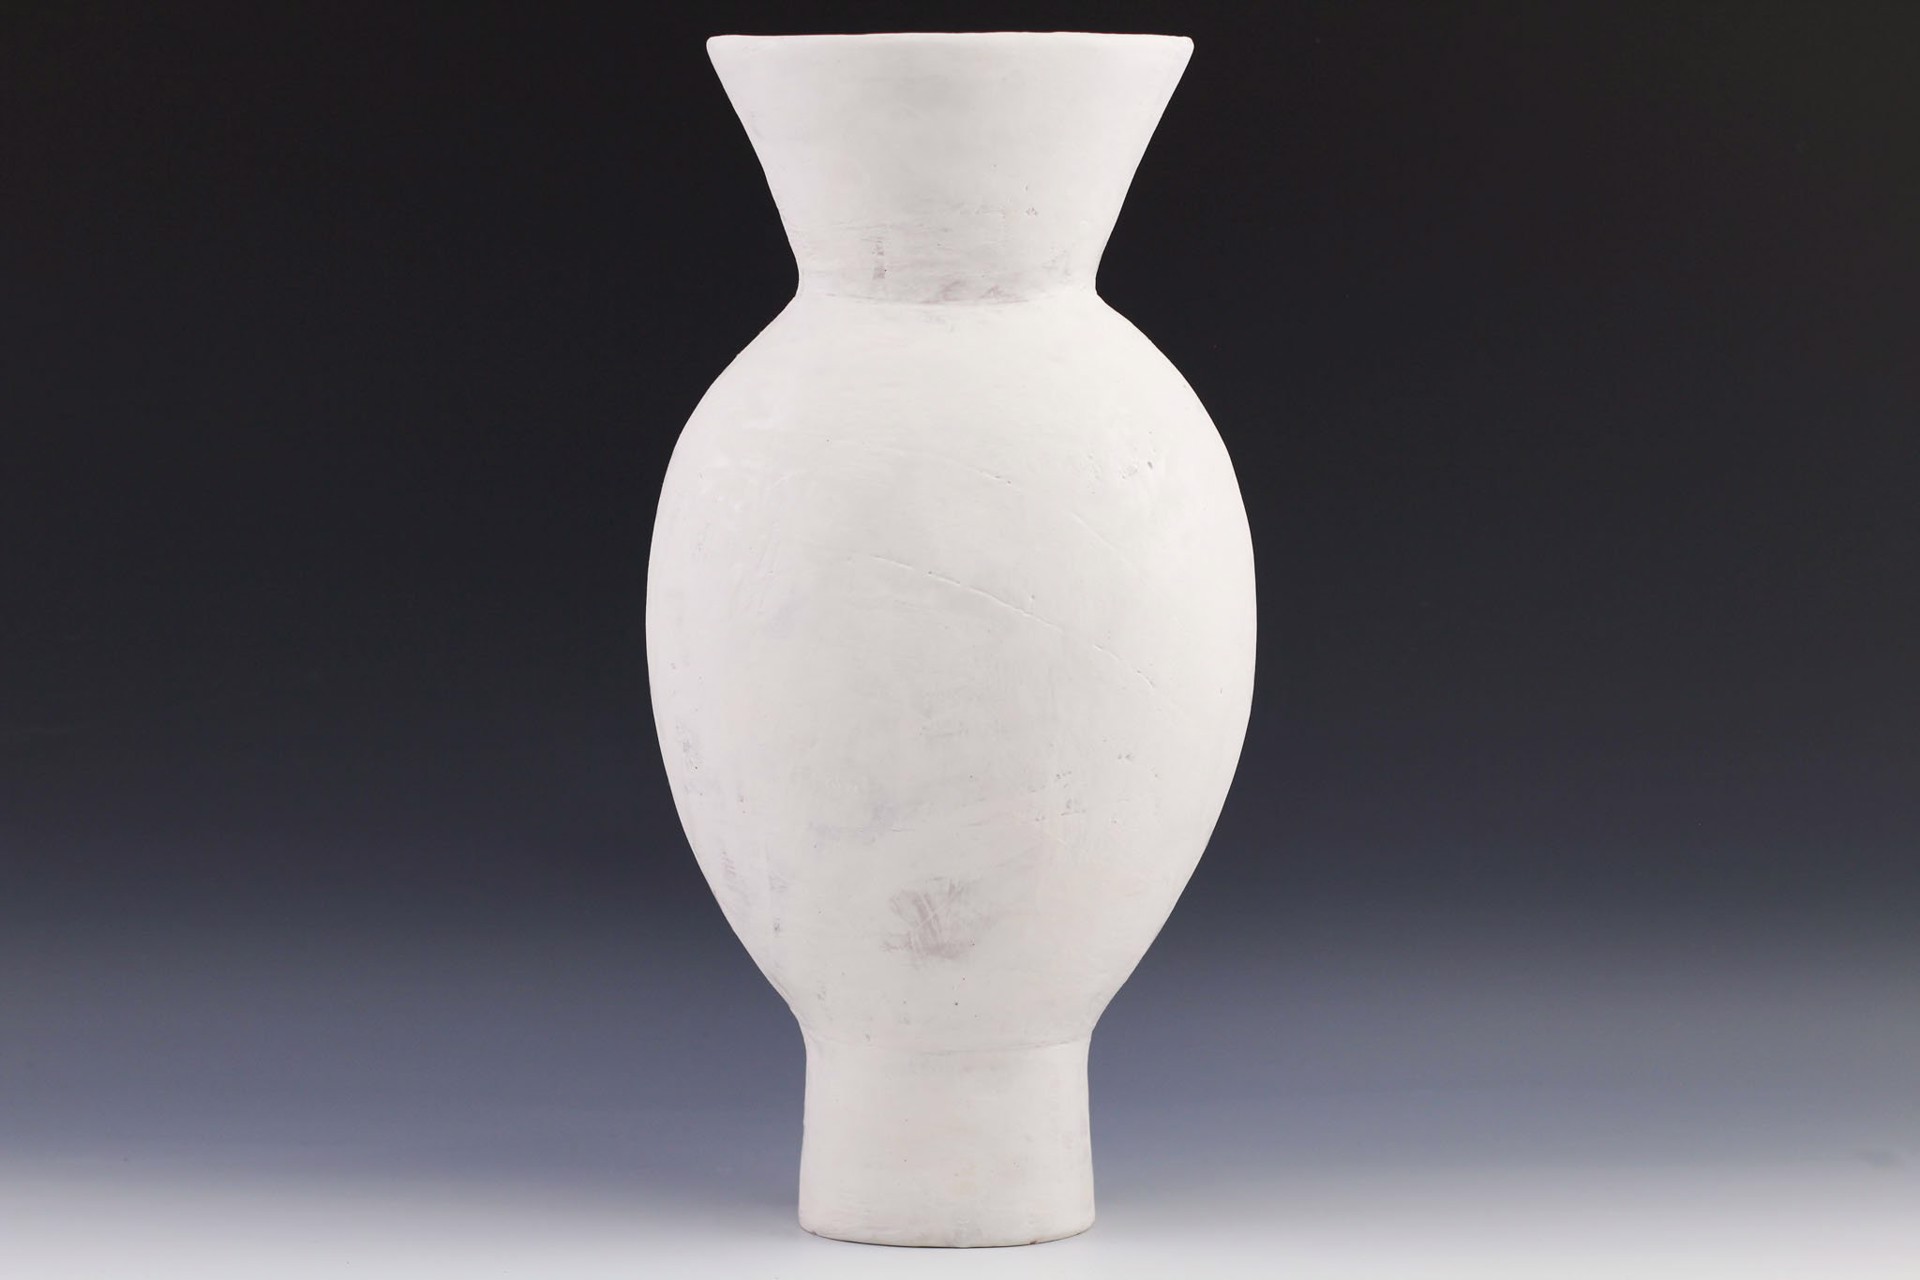 Large Vase by Maggie Jaszczak